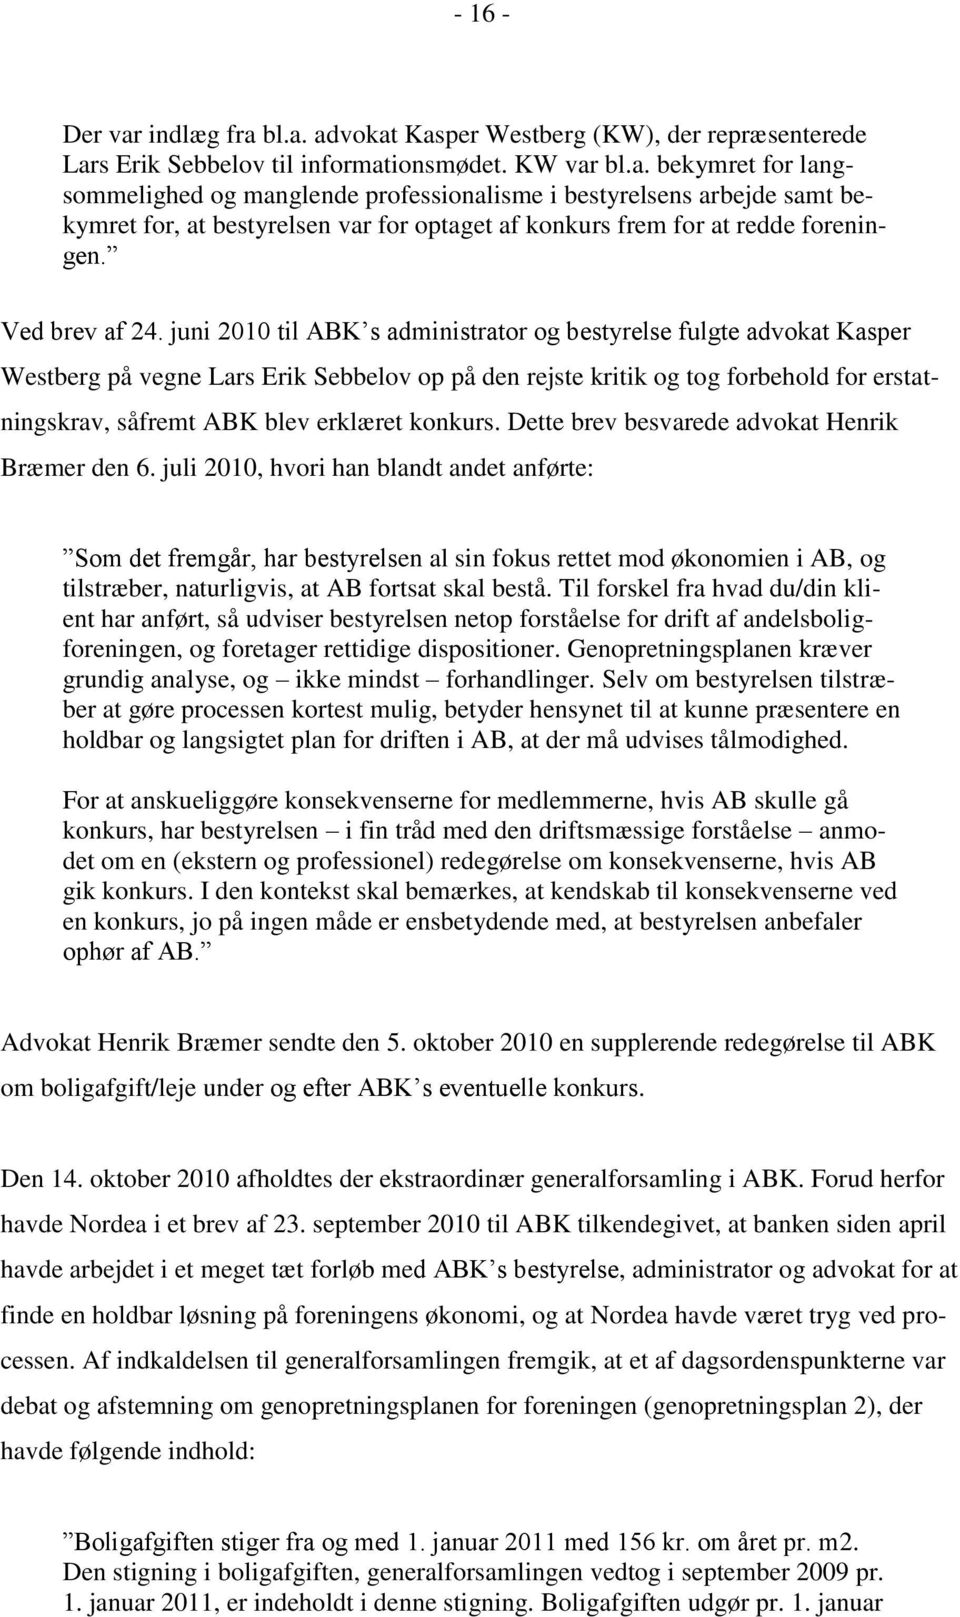 juni 2010 til ABK s administrator og bestyrelse fulgte advokat Kasper Westberg på vegne Lars Erik Sebbelov op på den rejste kritik og tog forbehold for erstatningskrav, såfremt ABK blev erklæret